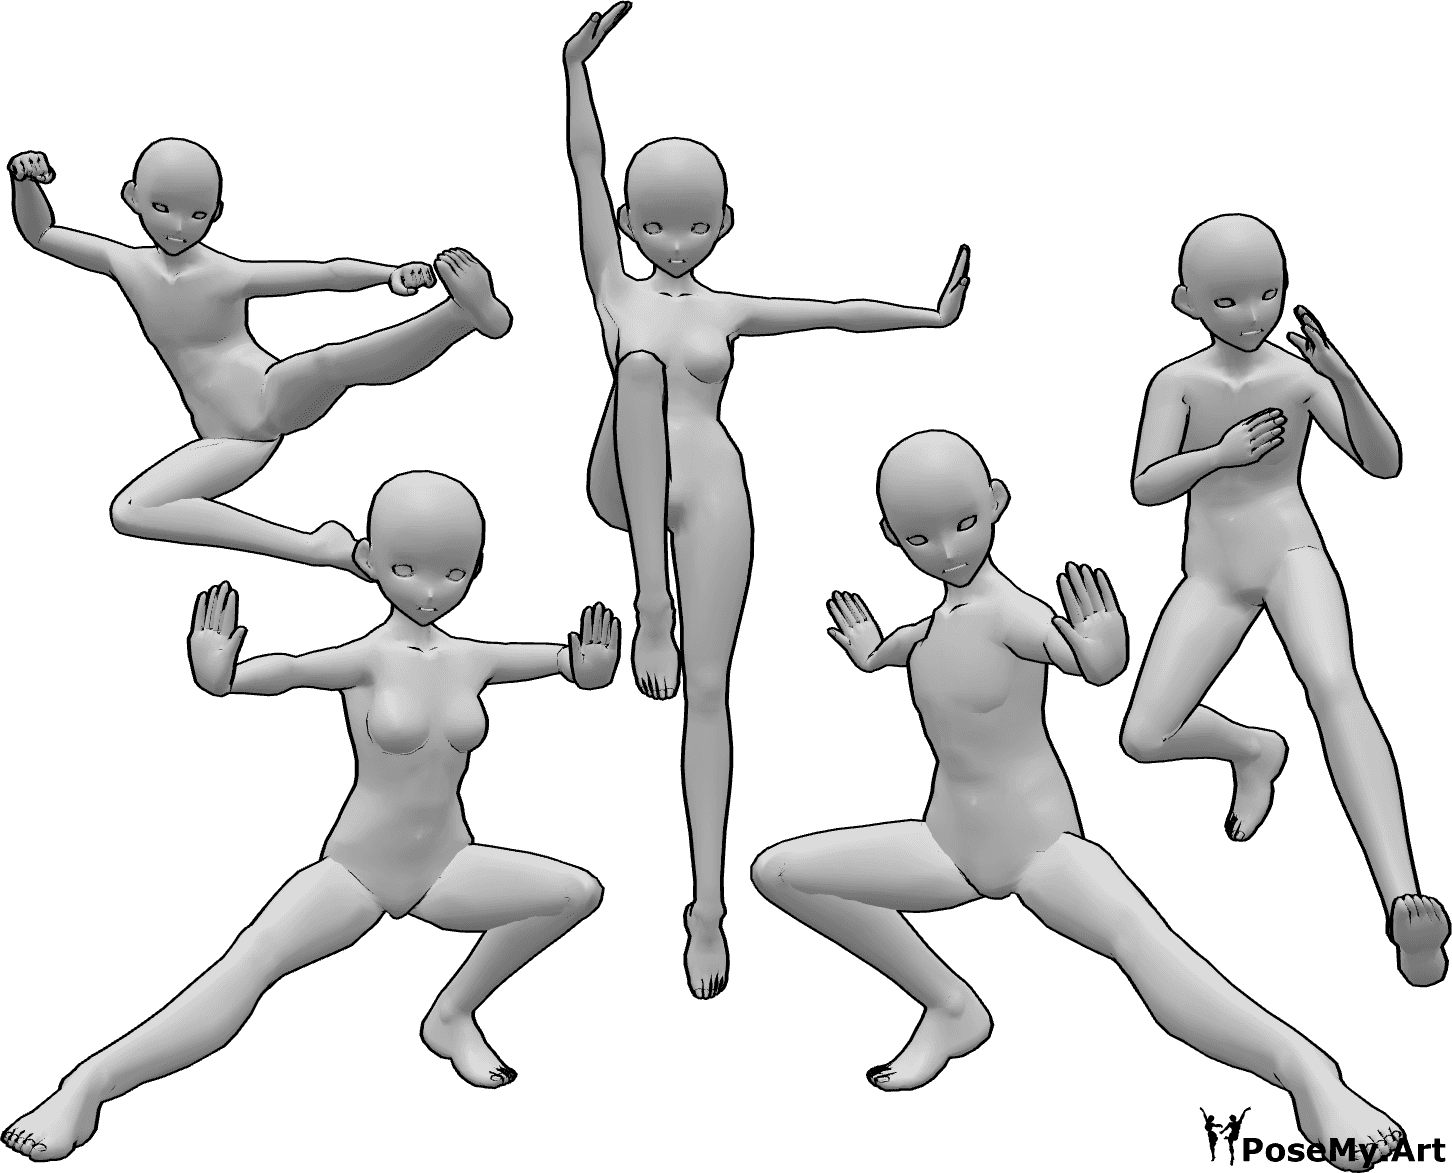 Referencia de poses- Anime kung fu pose de grupo - Grupo de cinco anime femenino y masculino luchadores de kung fu están posando, anime kung fu luchadores posan